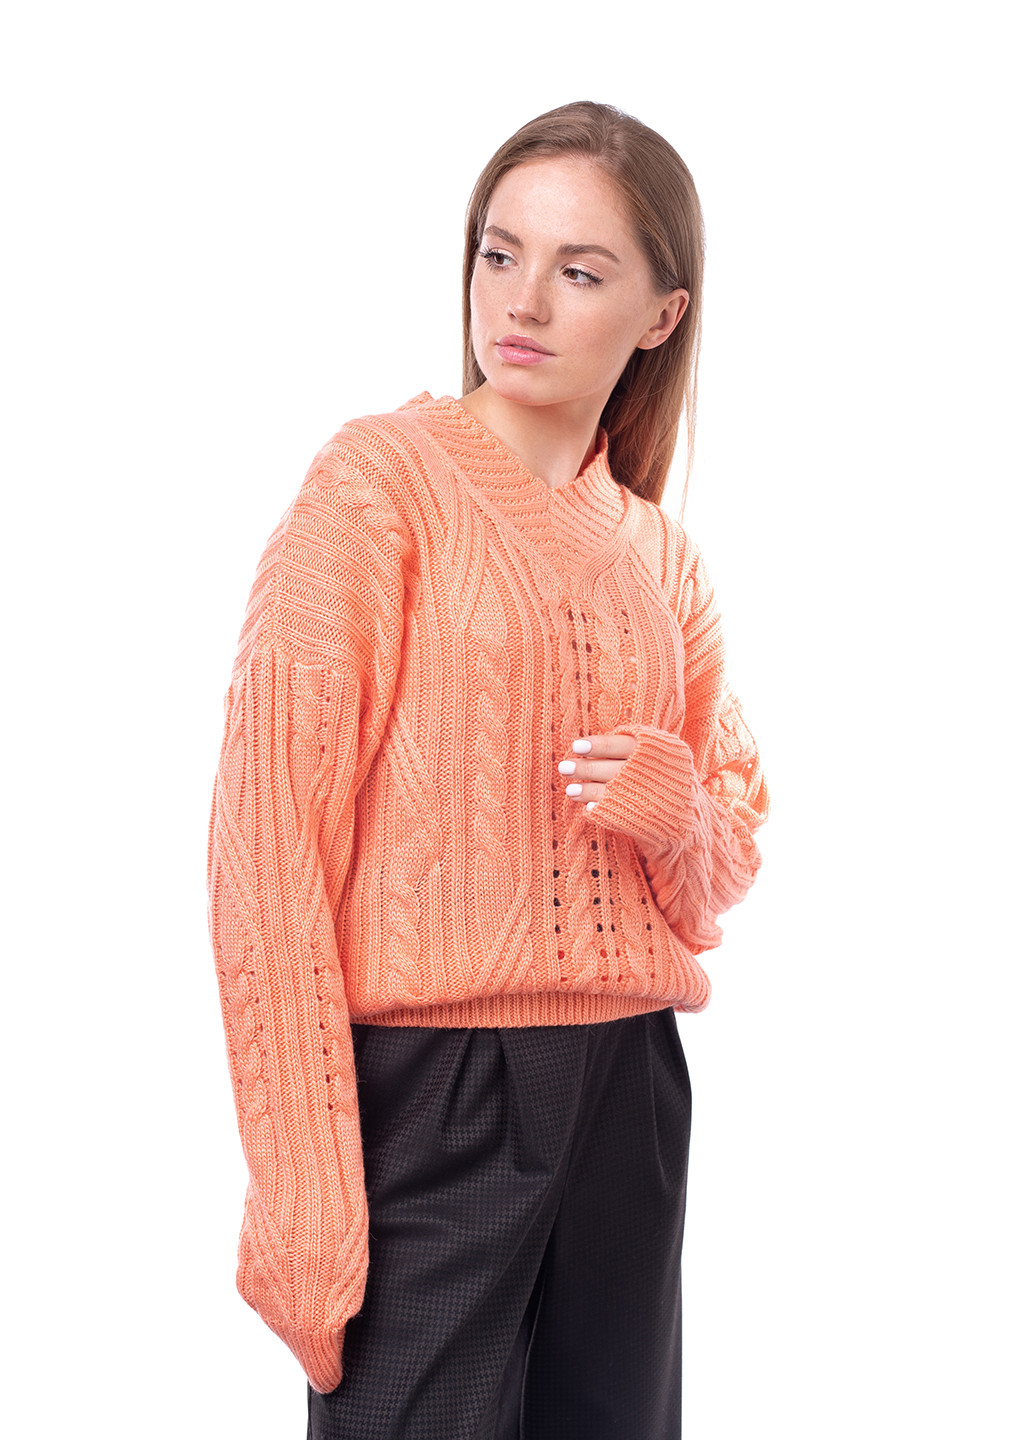 Персиковый демисезонный пуловер пуловер Bakhur